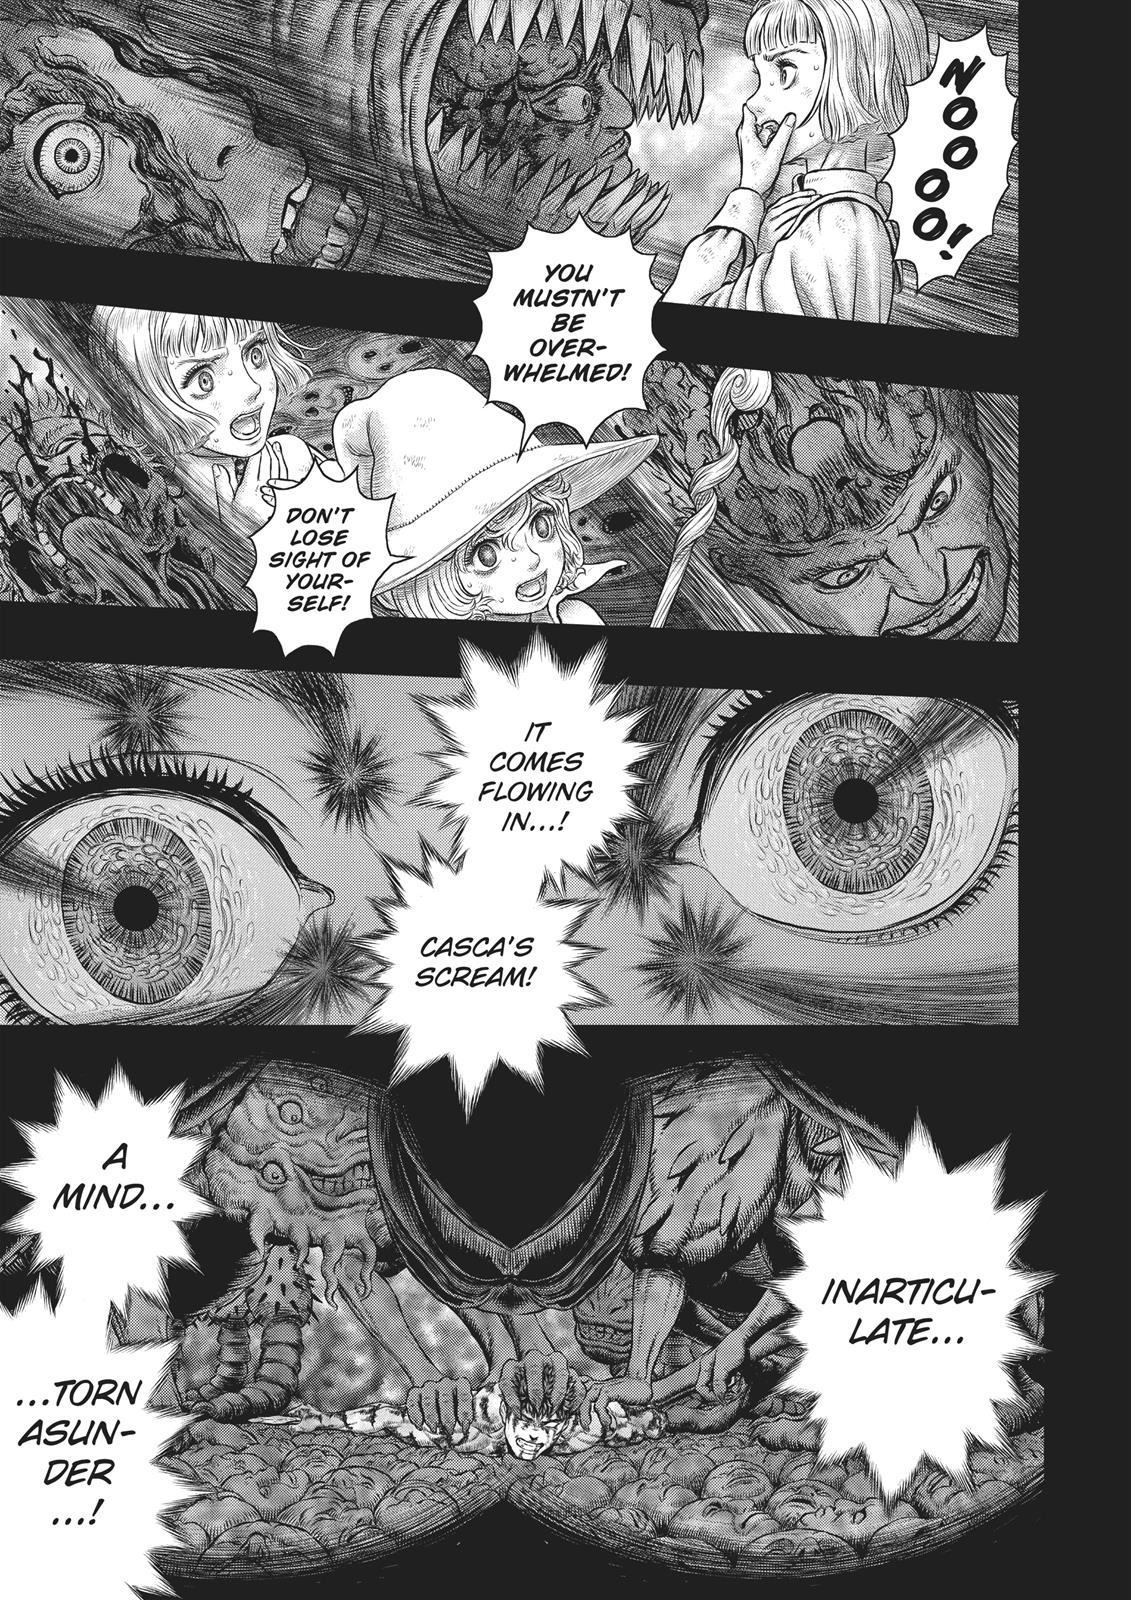 Berserk Manga Chapter 354 image 04